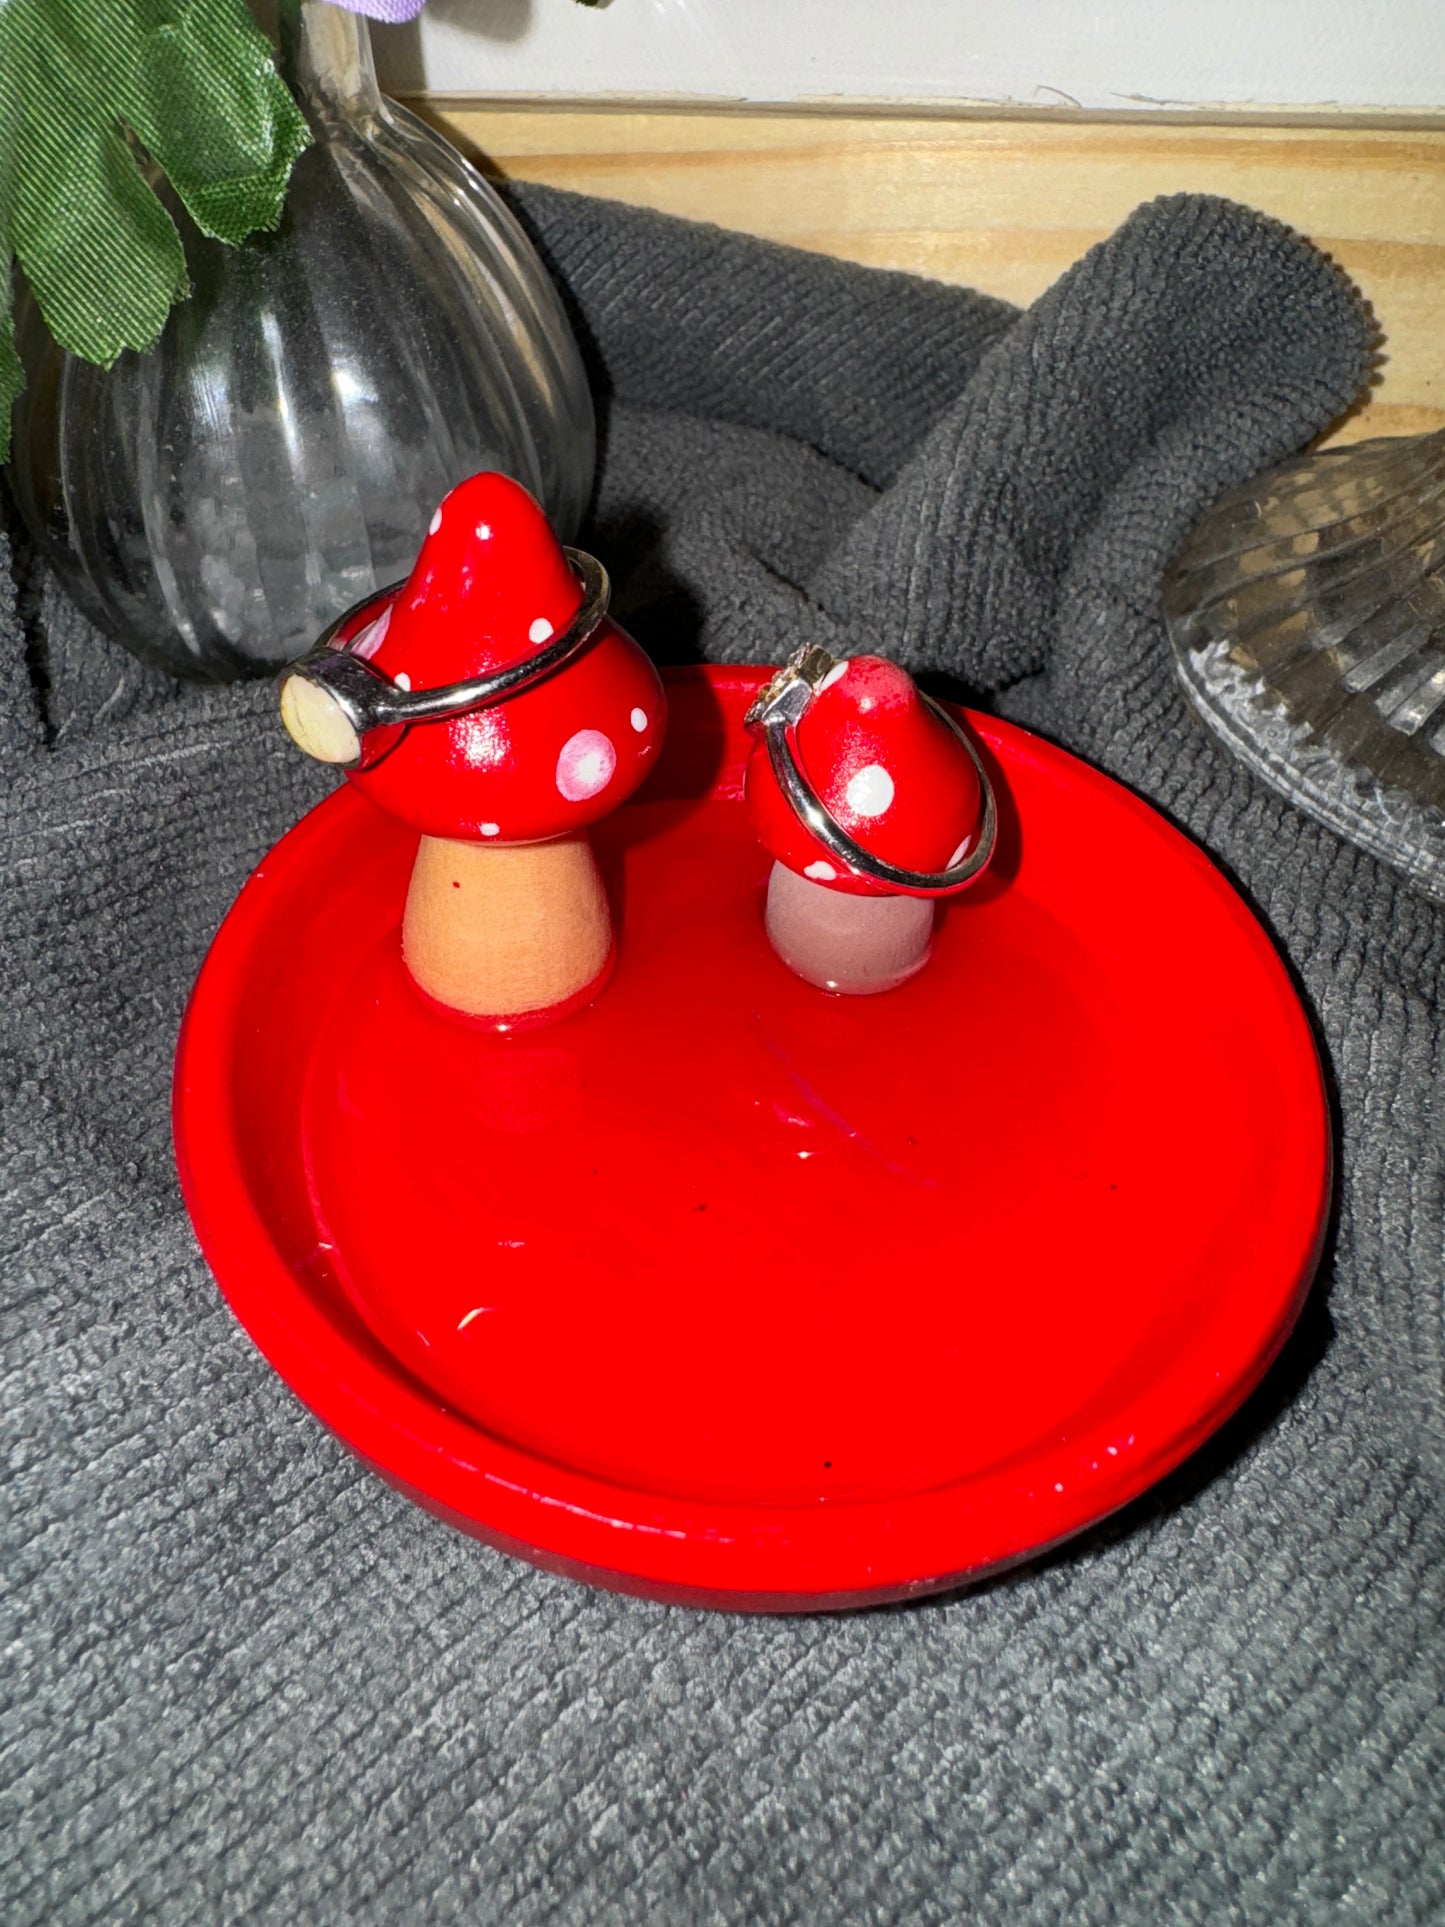 Mushroom Ring Dish